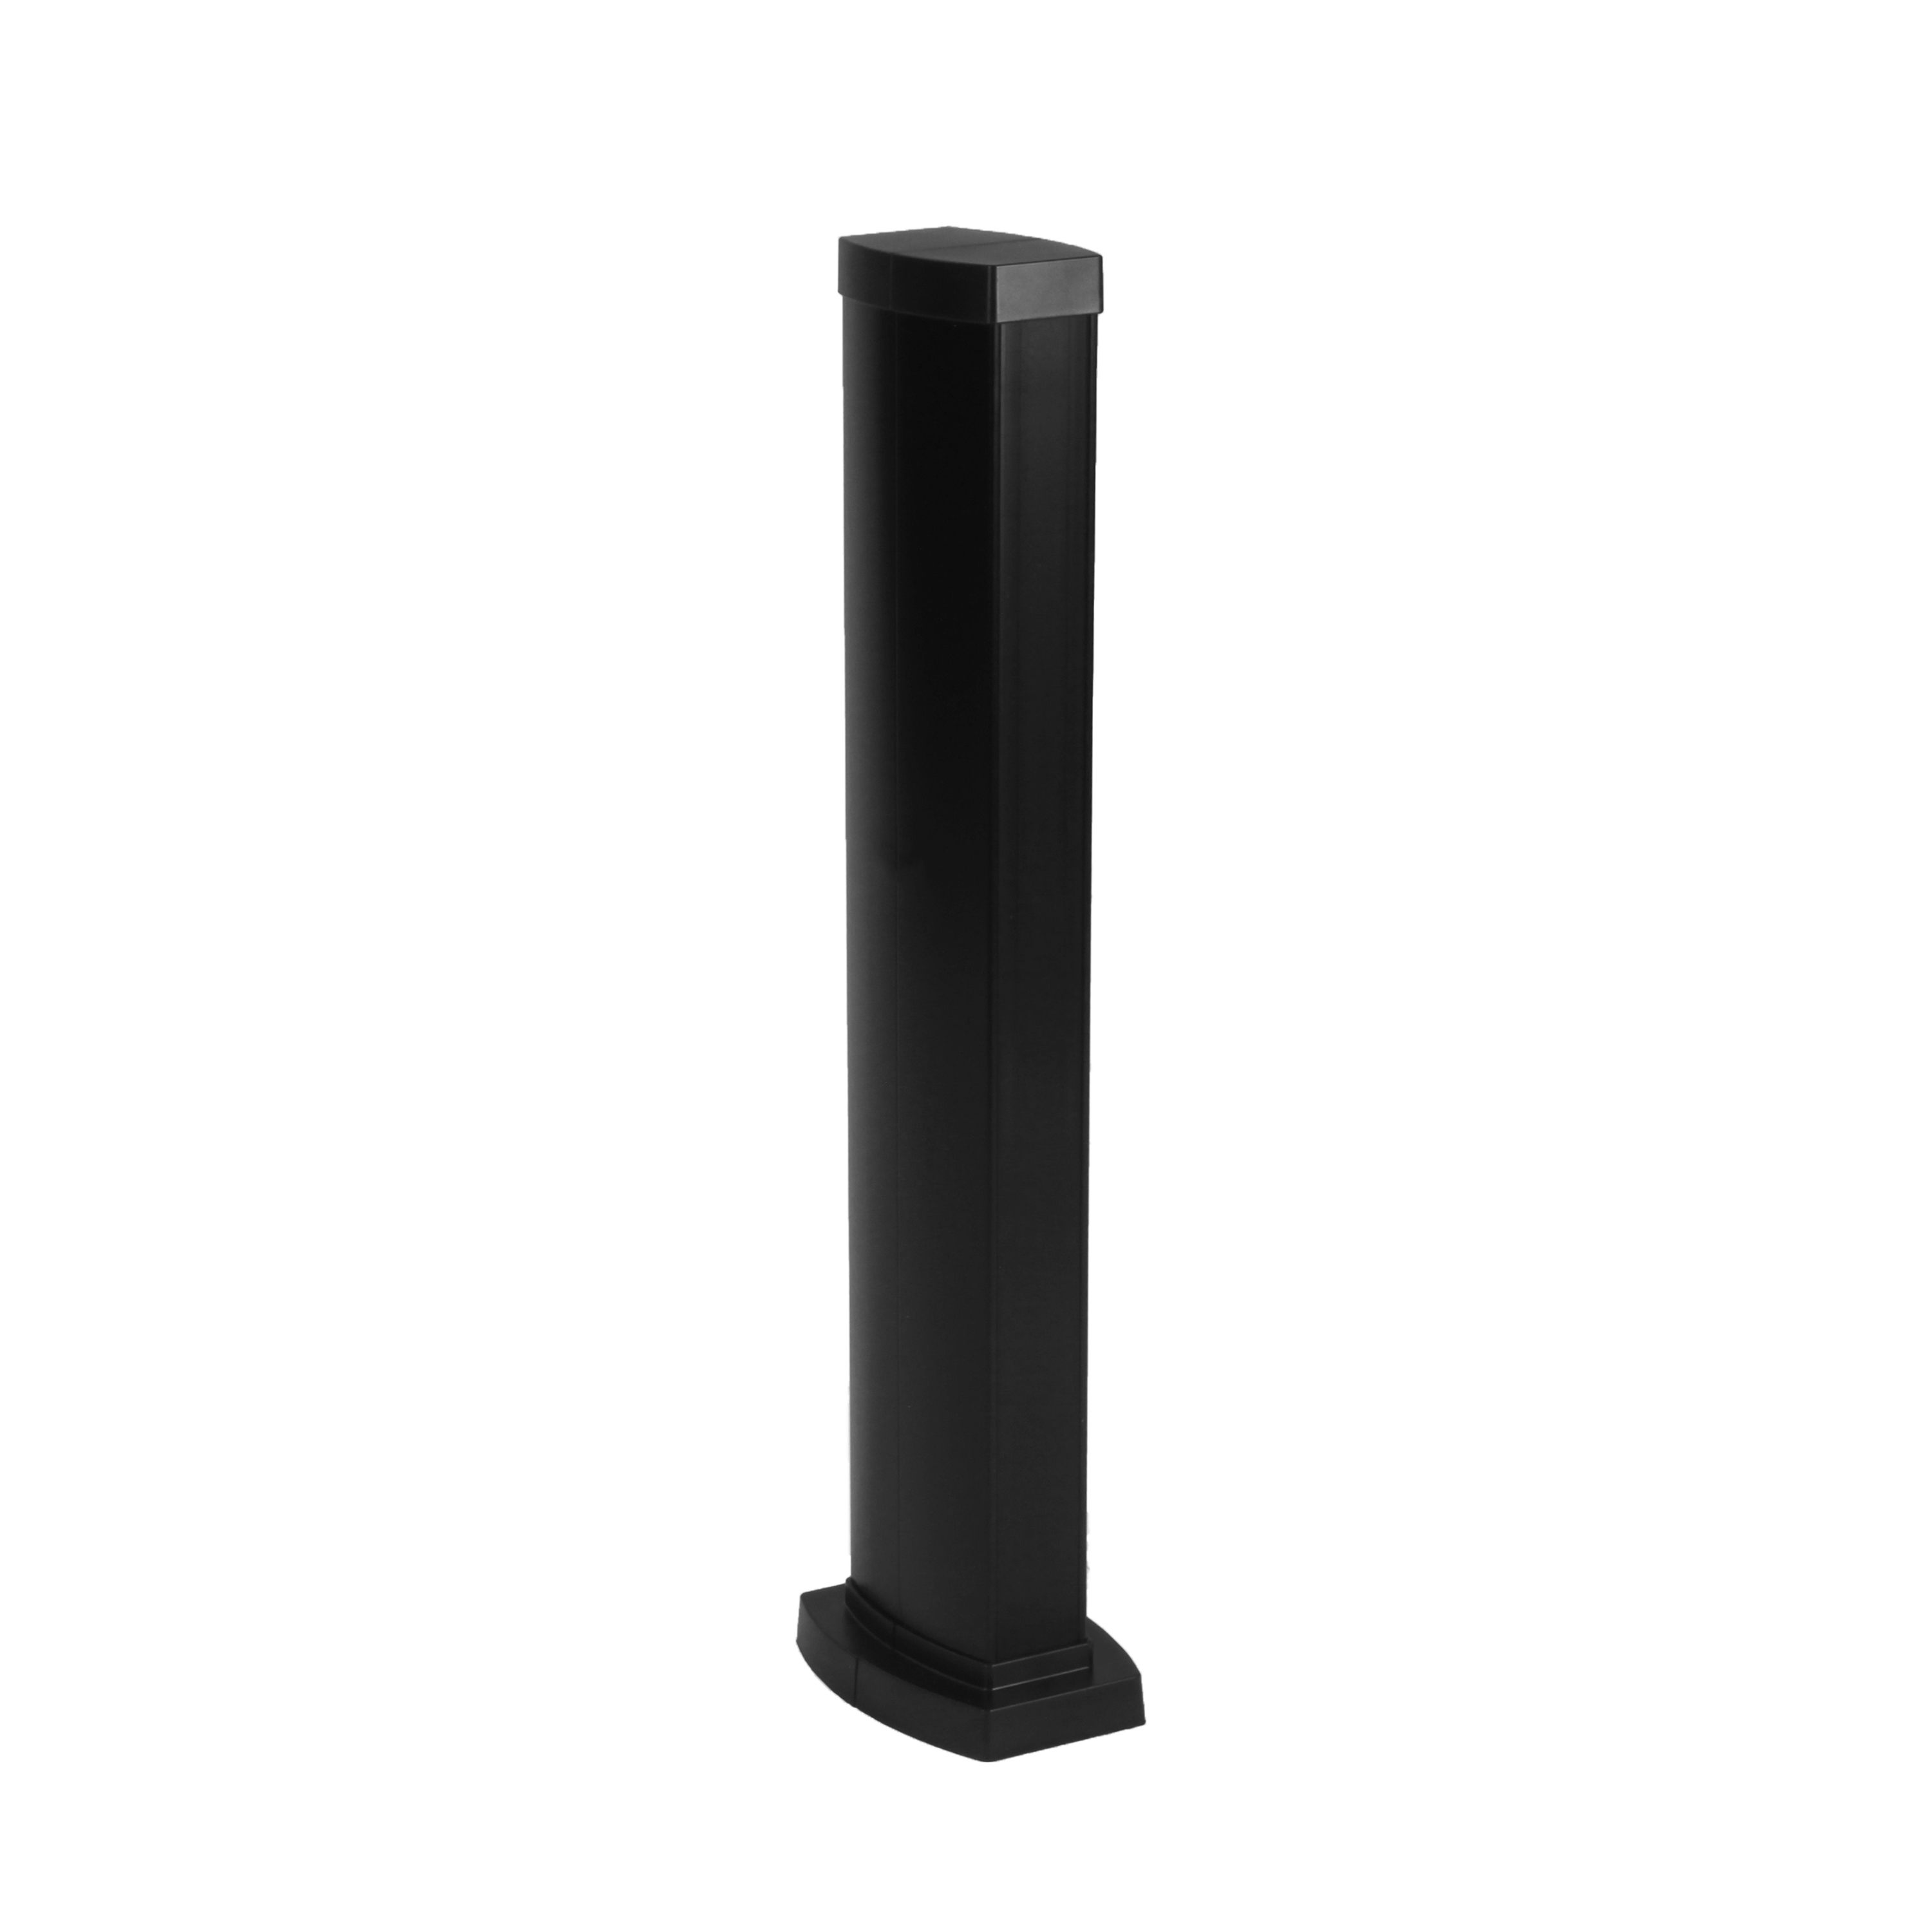 Snap-On мини-колонна алюминиевая с крышкой из пластика, 2 секции, высота 0,68 метра, цвет черный 653025 Legrand